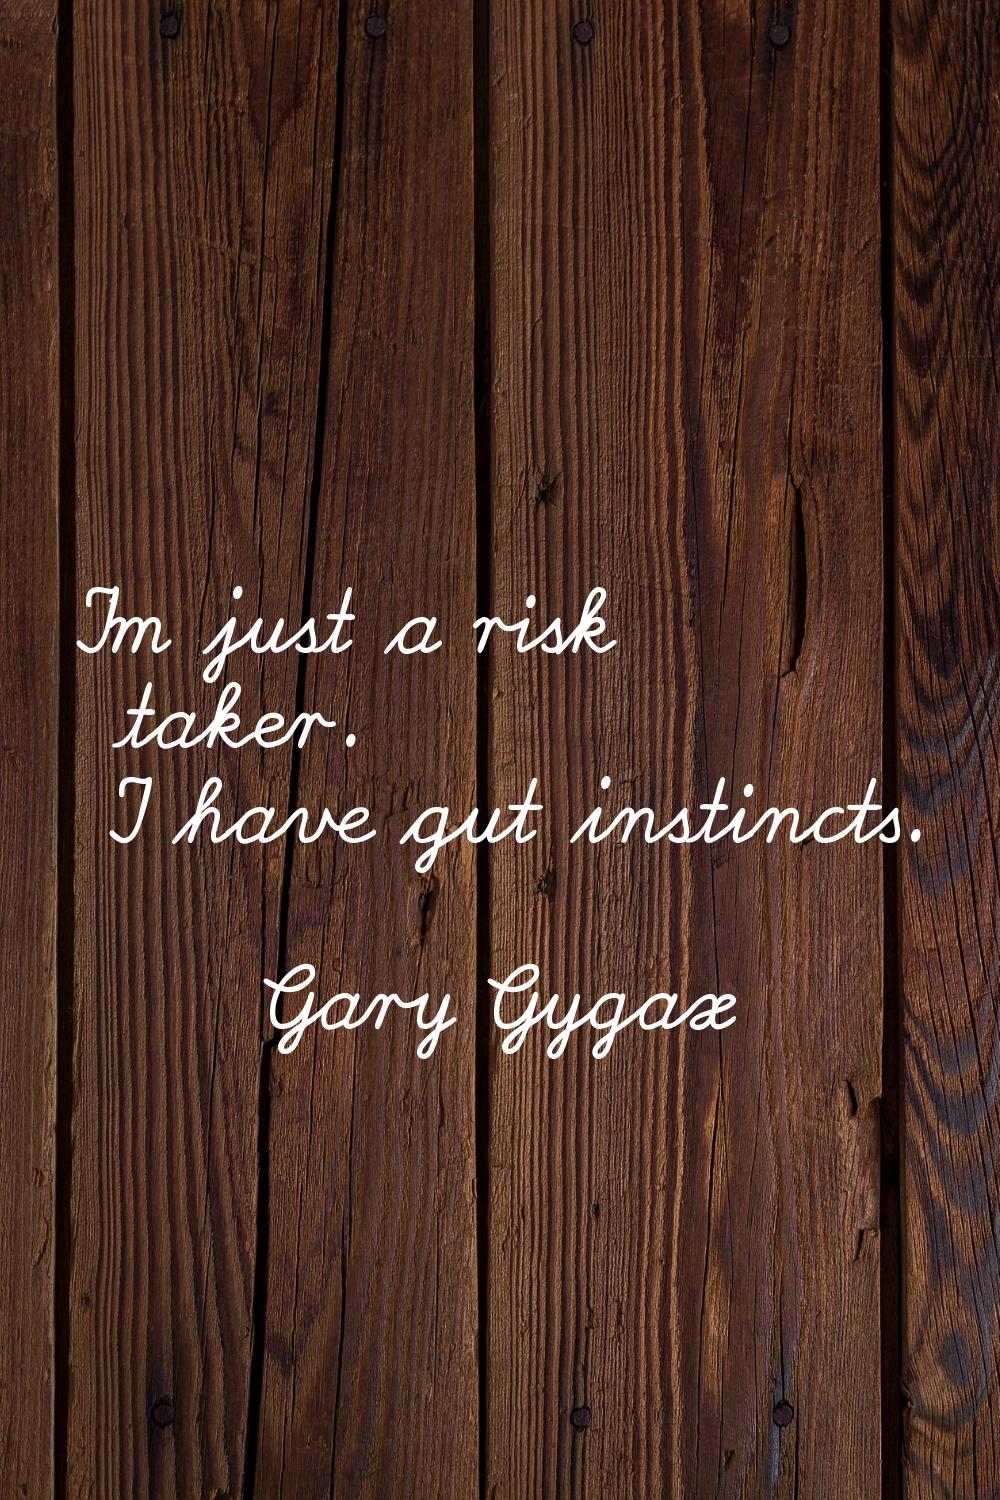 I'm just a risk taker. I have gut instincts.